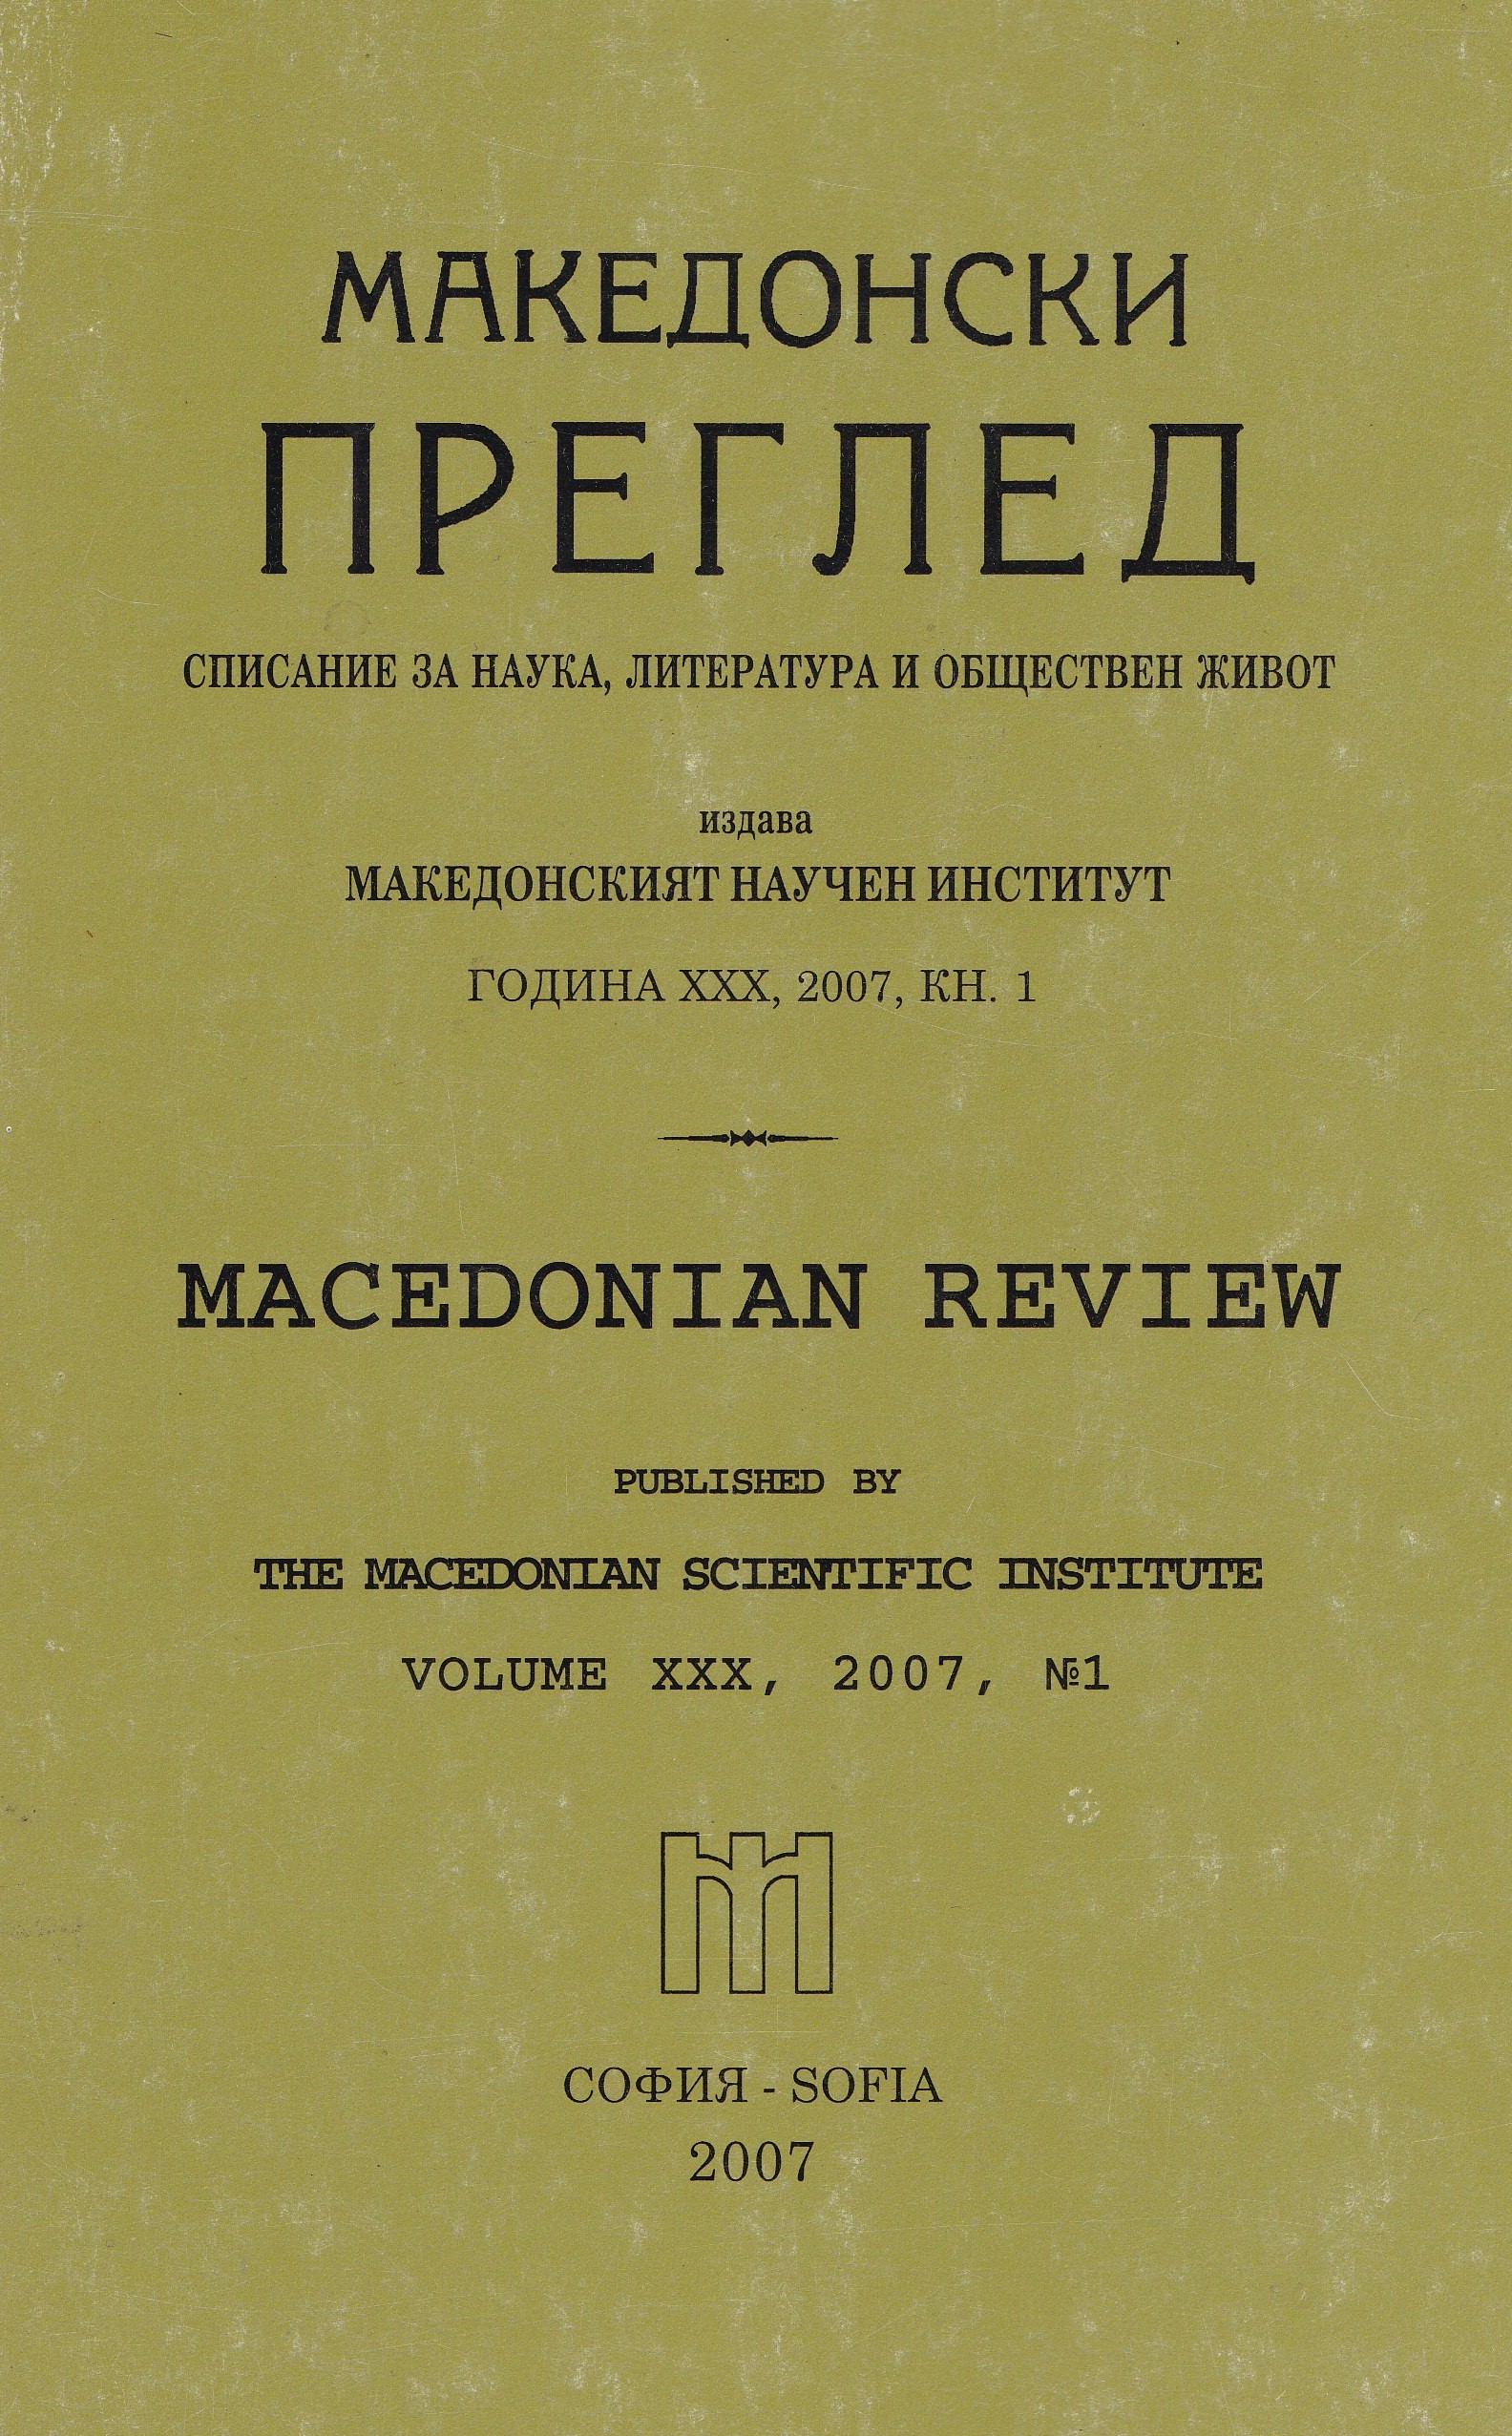 Фискалната политика във Вардарска Македония (1941-1944 г.)